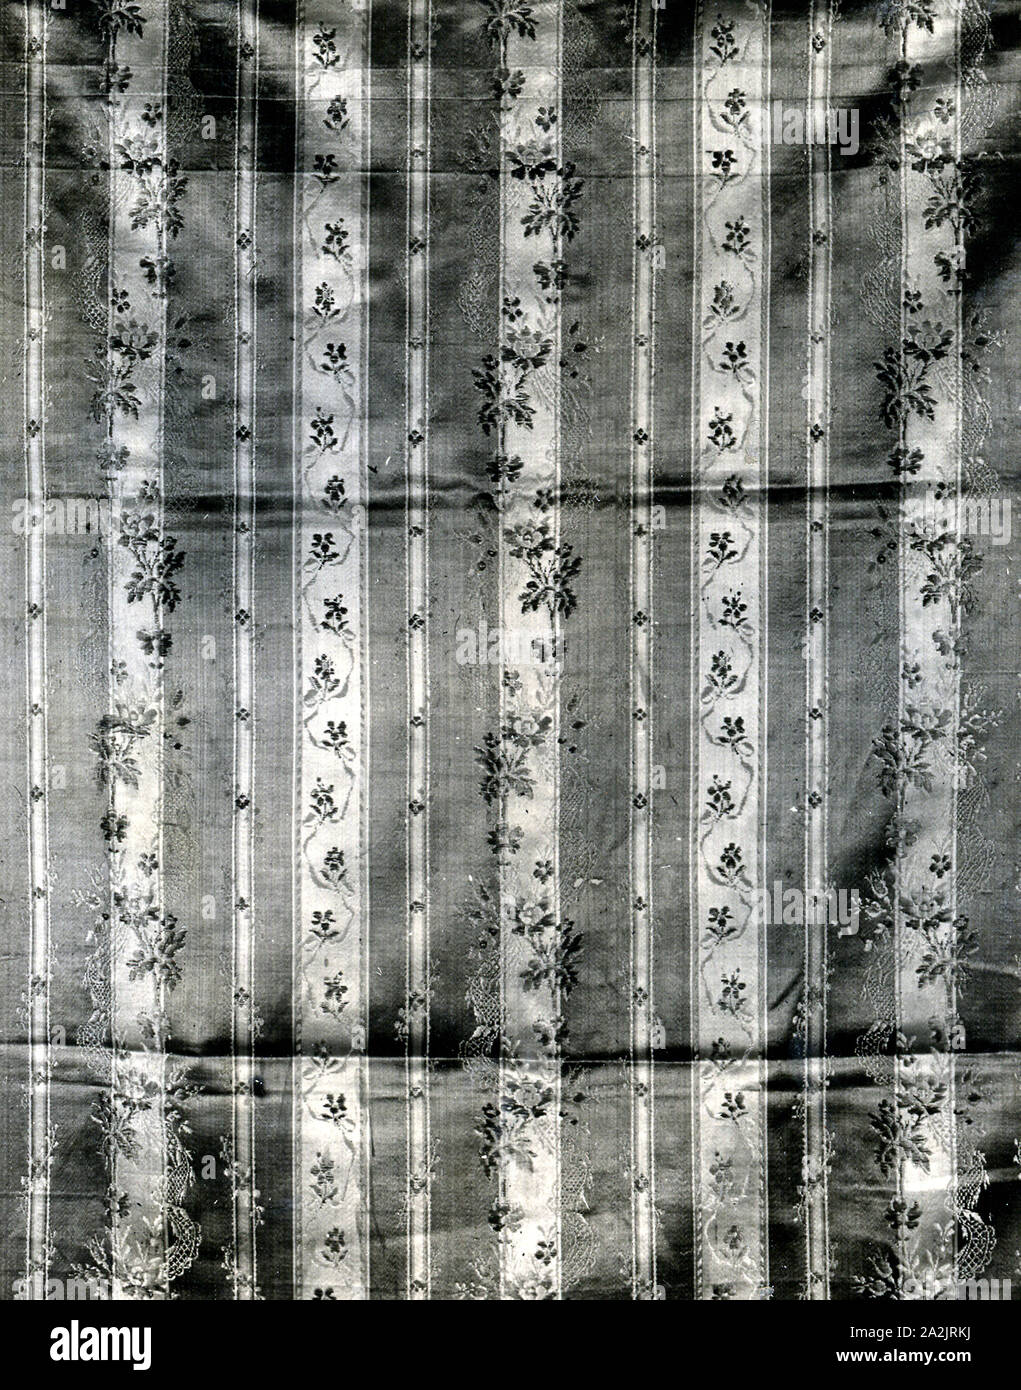 Pannello, 1775/1800, Francia, seta, raso con pattern inserito in fili galleggianti di trama Foto Stock